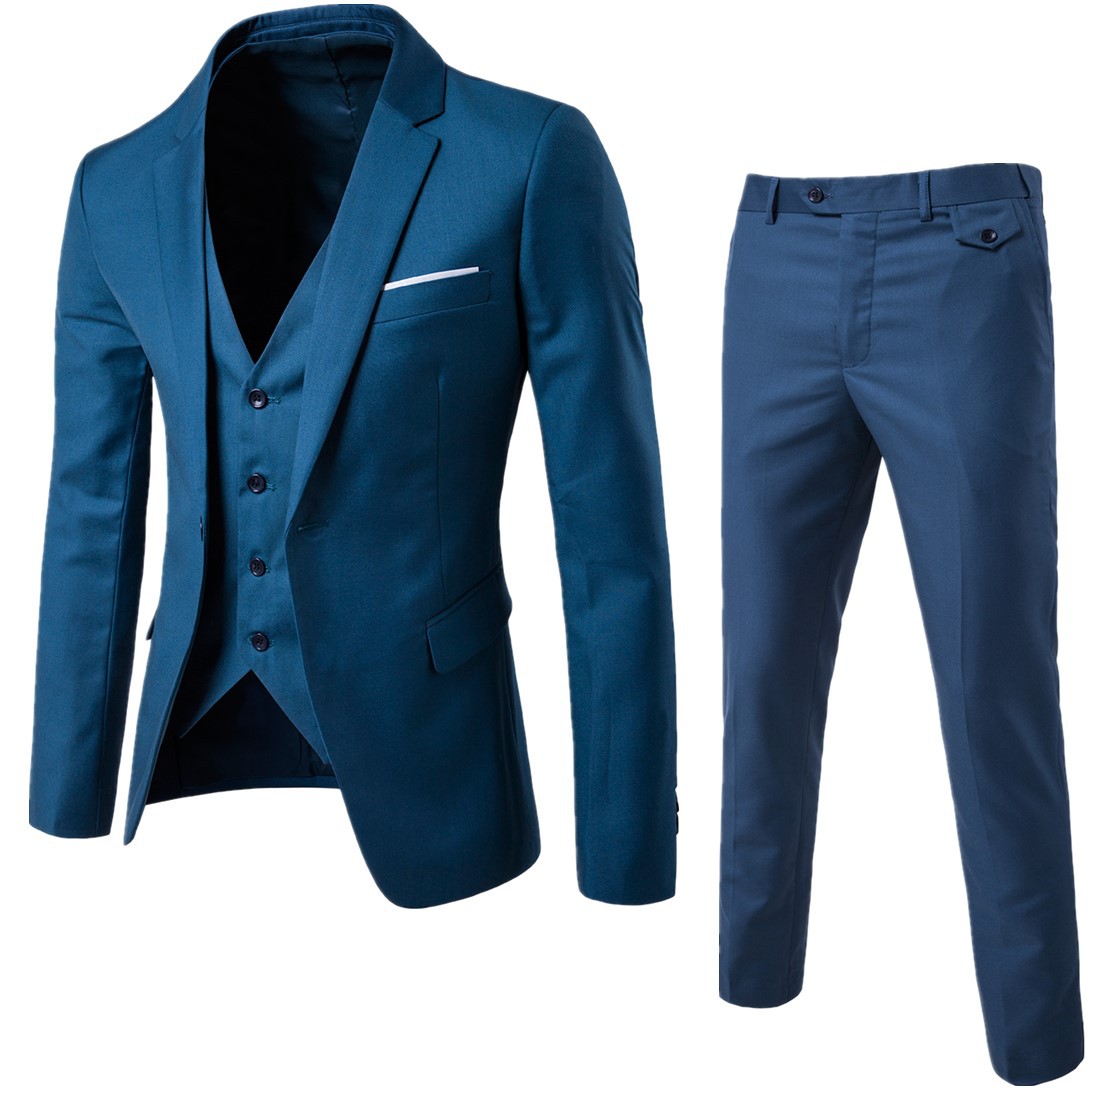 Autumn new 2019 men's suit suit three piece suit men's Korean slim solid color wedding suit trend